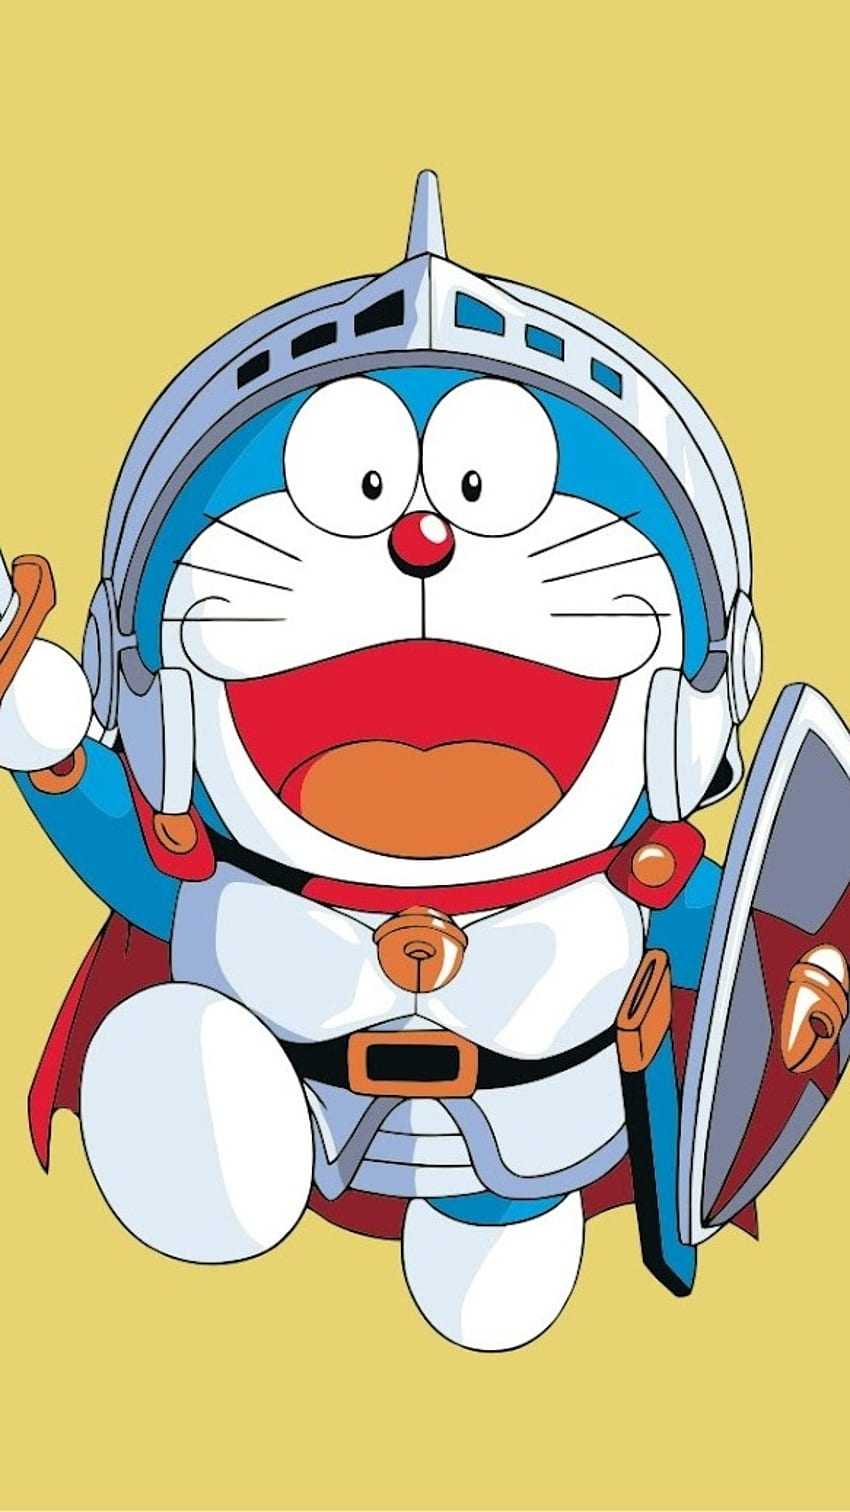 Hãy cùng khám phá thế giới phiêu lưu kỳ thú cùng chú mèo máy Doraemon trong hình ảnh đầy màu sắc và ấn tượng. Chắc chắn bạn sẽ không thể rời mắt khỏi những trang phục độc đáo và bảo bối vô cùng thú vị của chú ấy.